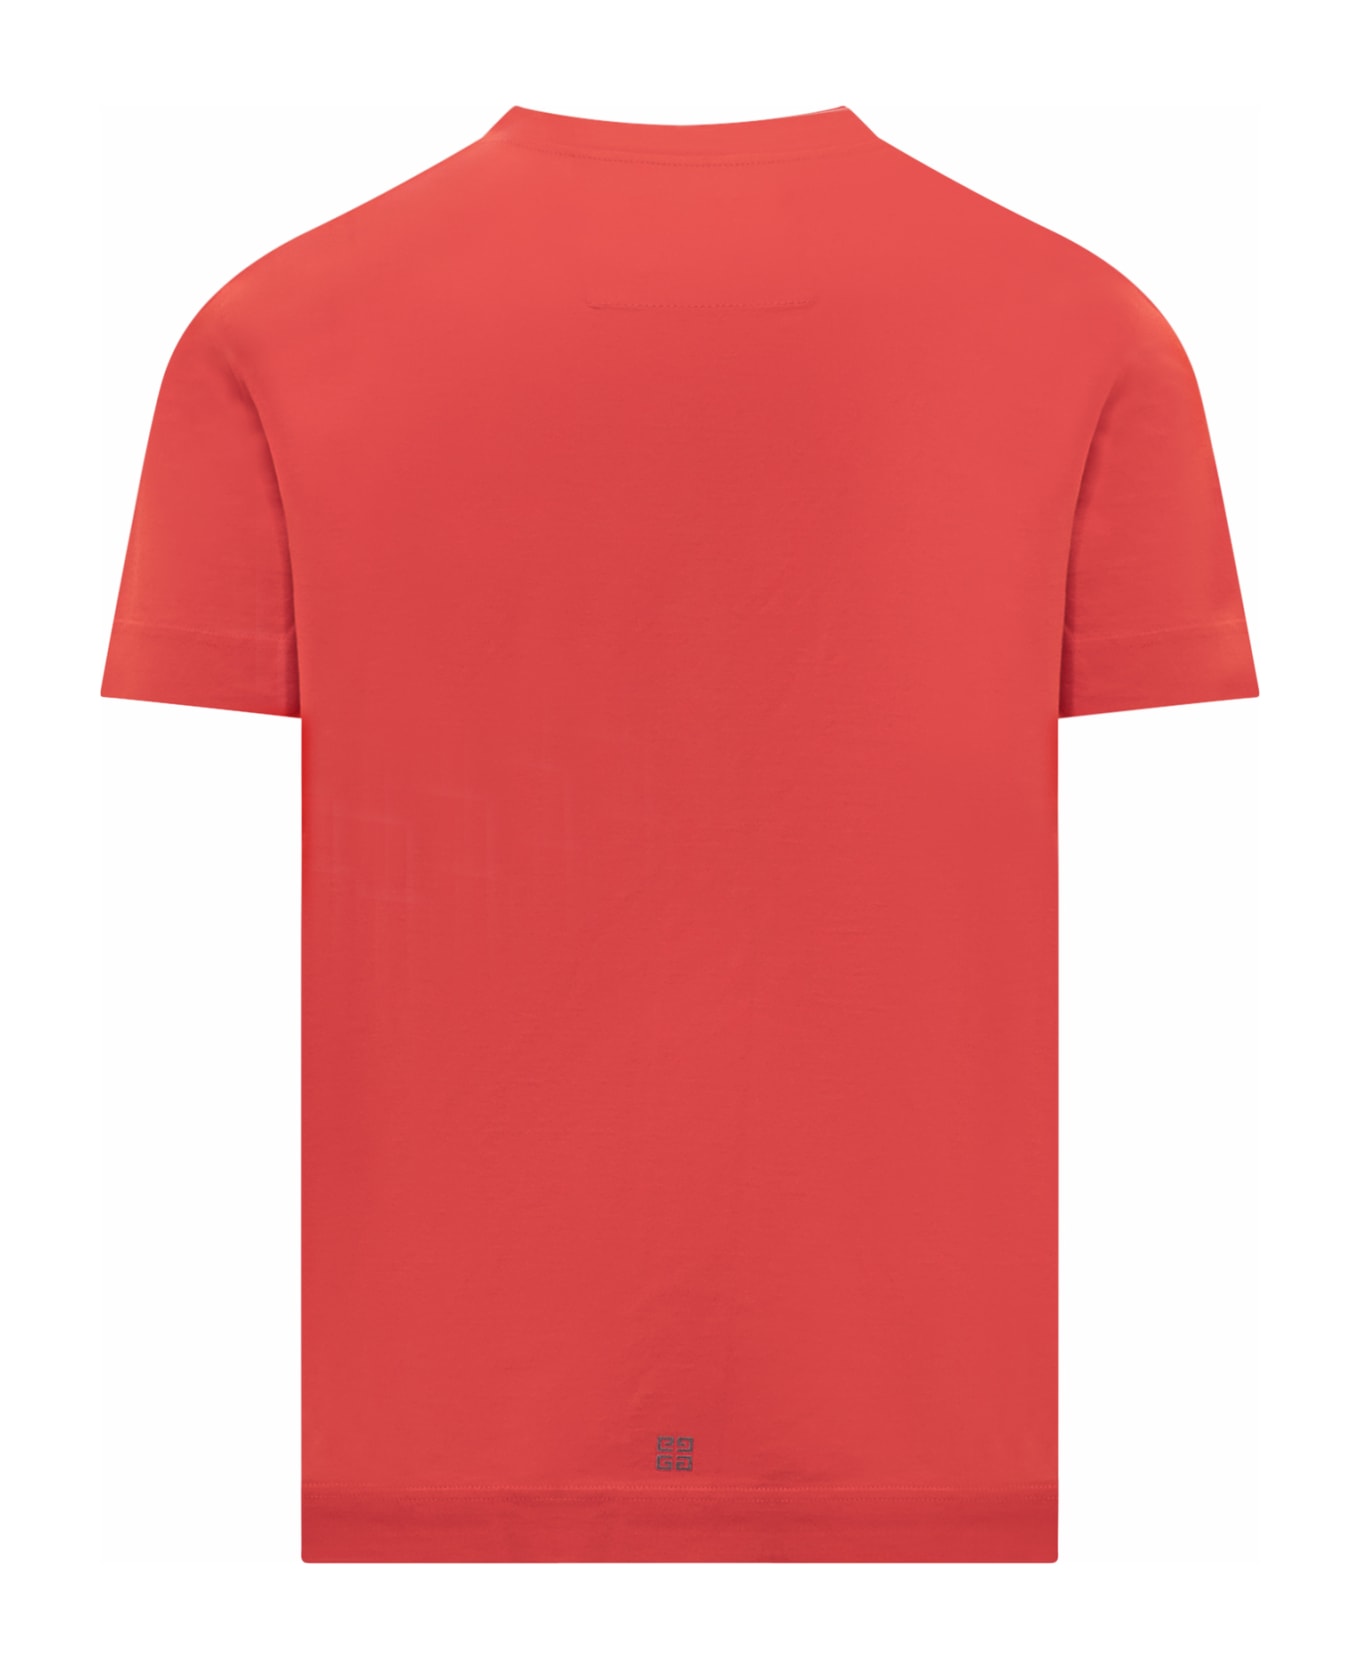 Givenchy T-shirt - MEDIUM RED